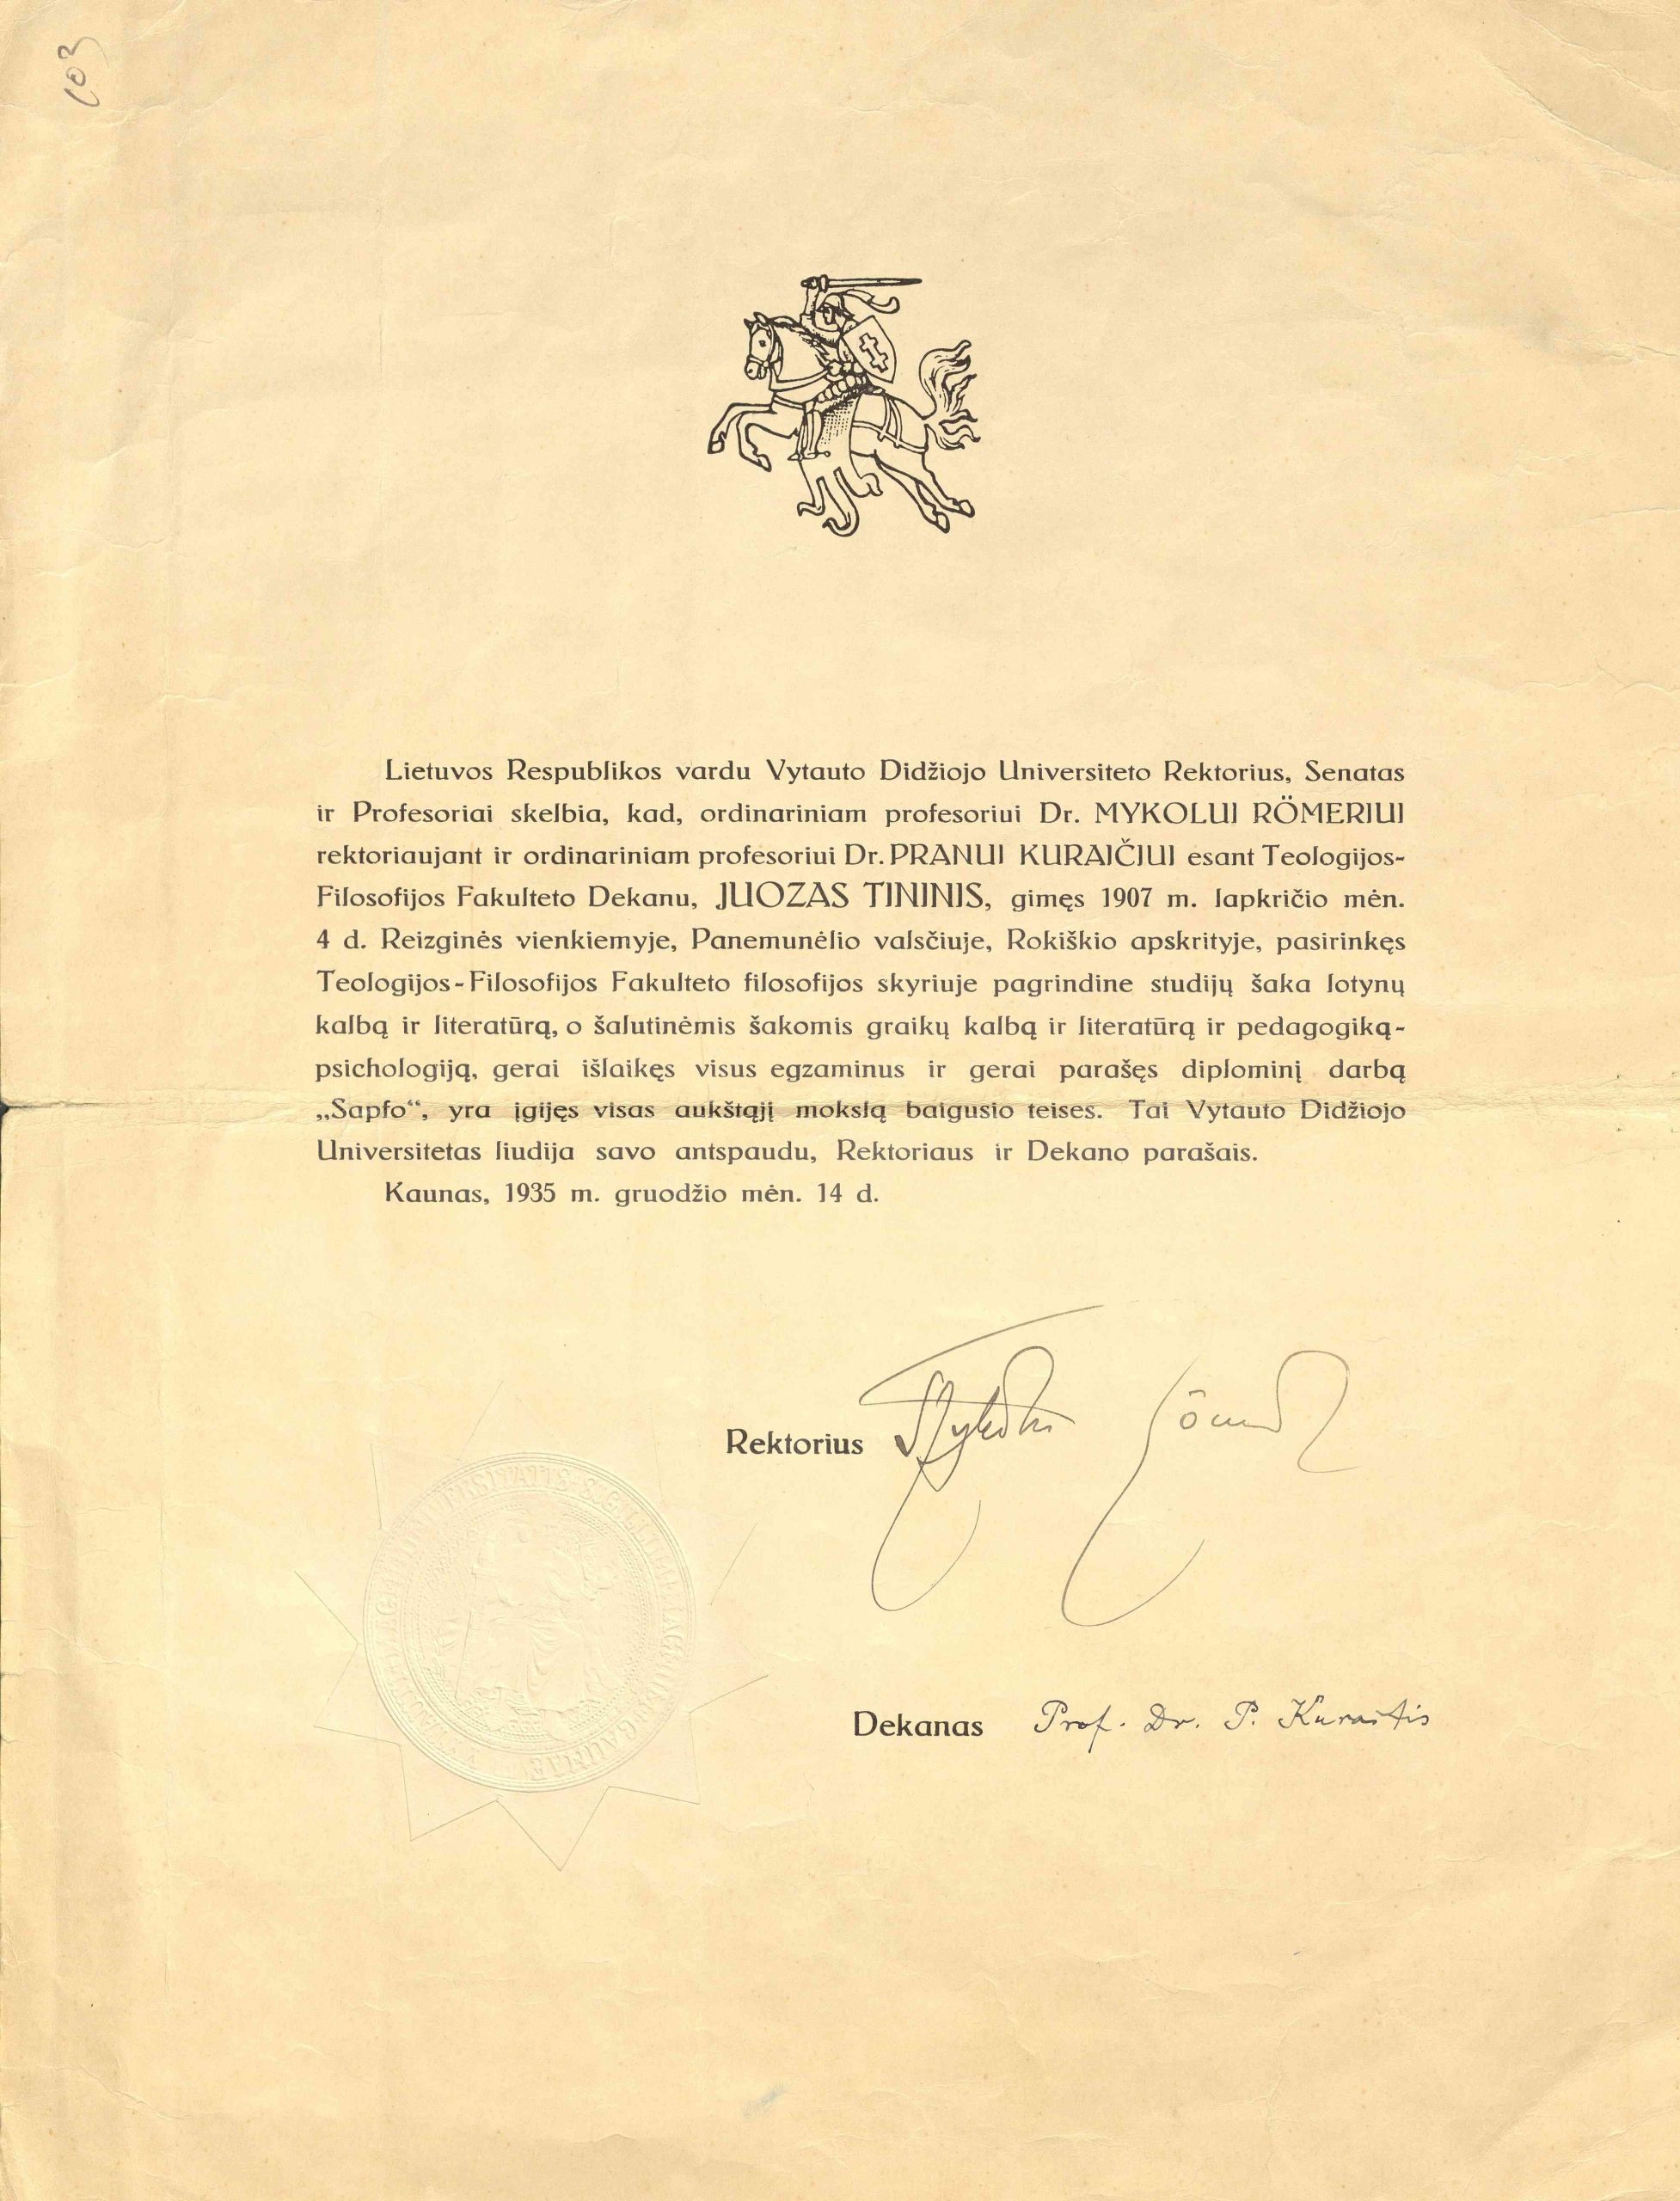 VDU diplomas, išduotas Juozui Tininiui. 1935 m. gruodžio 14 d.